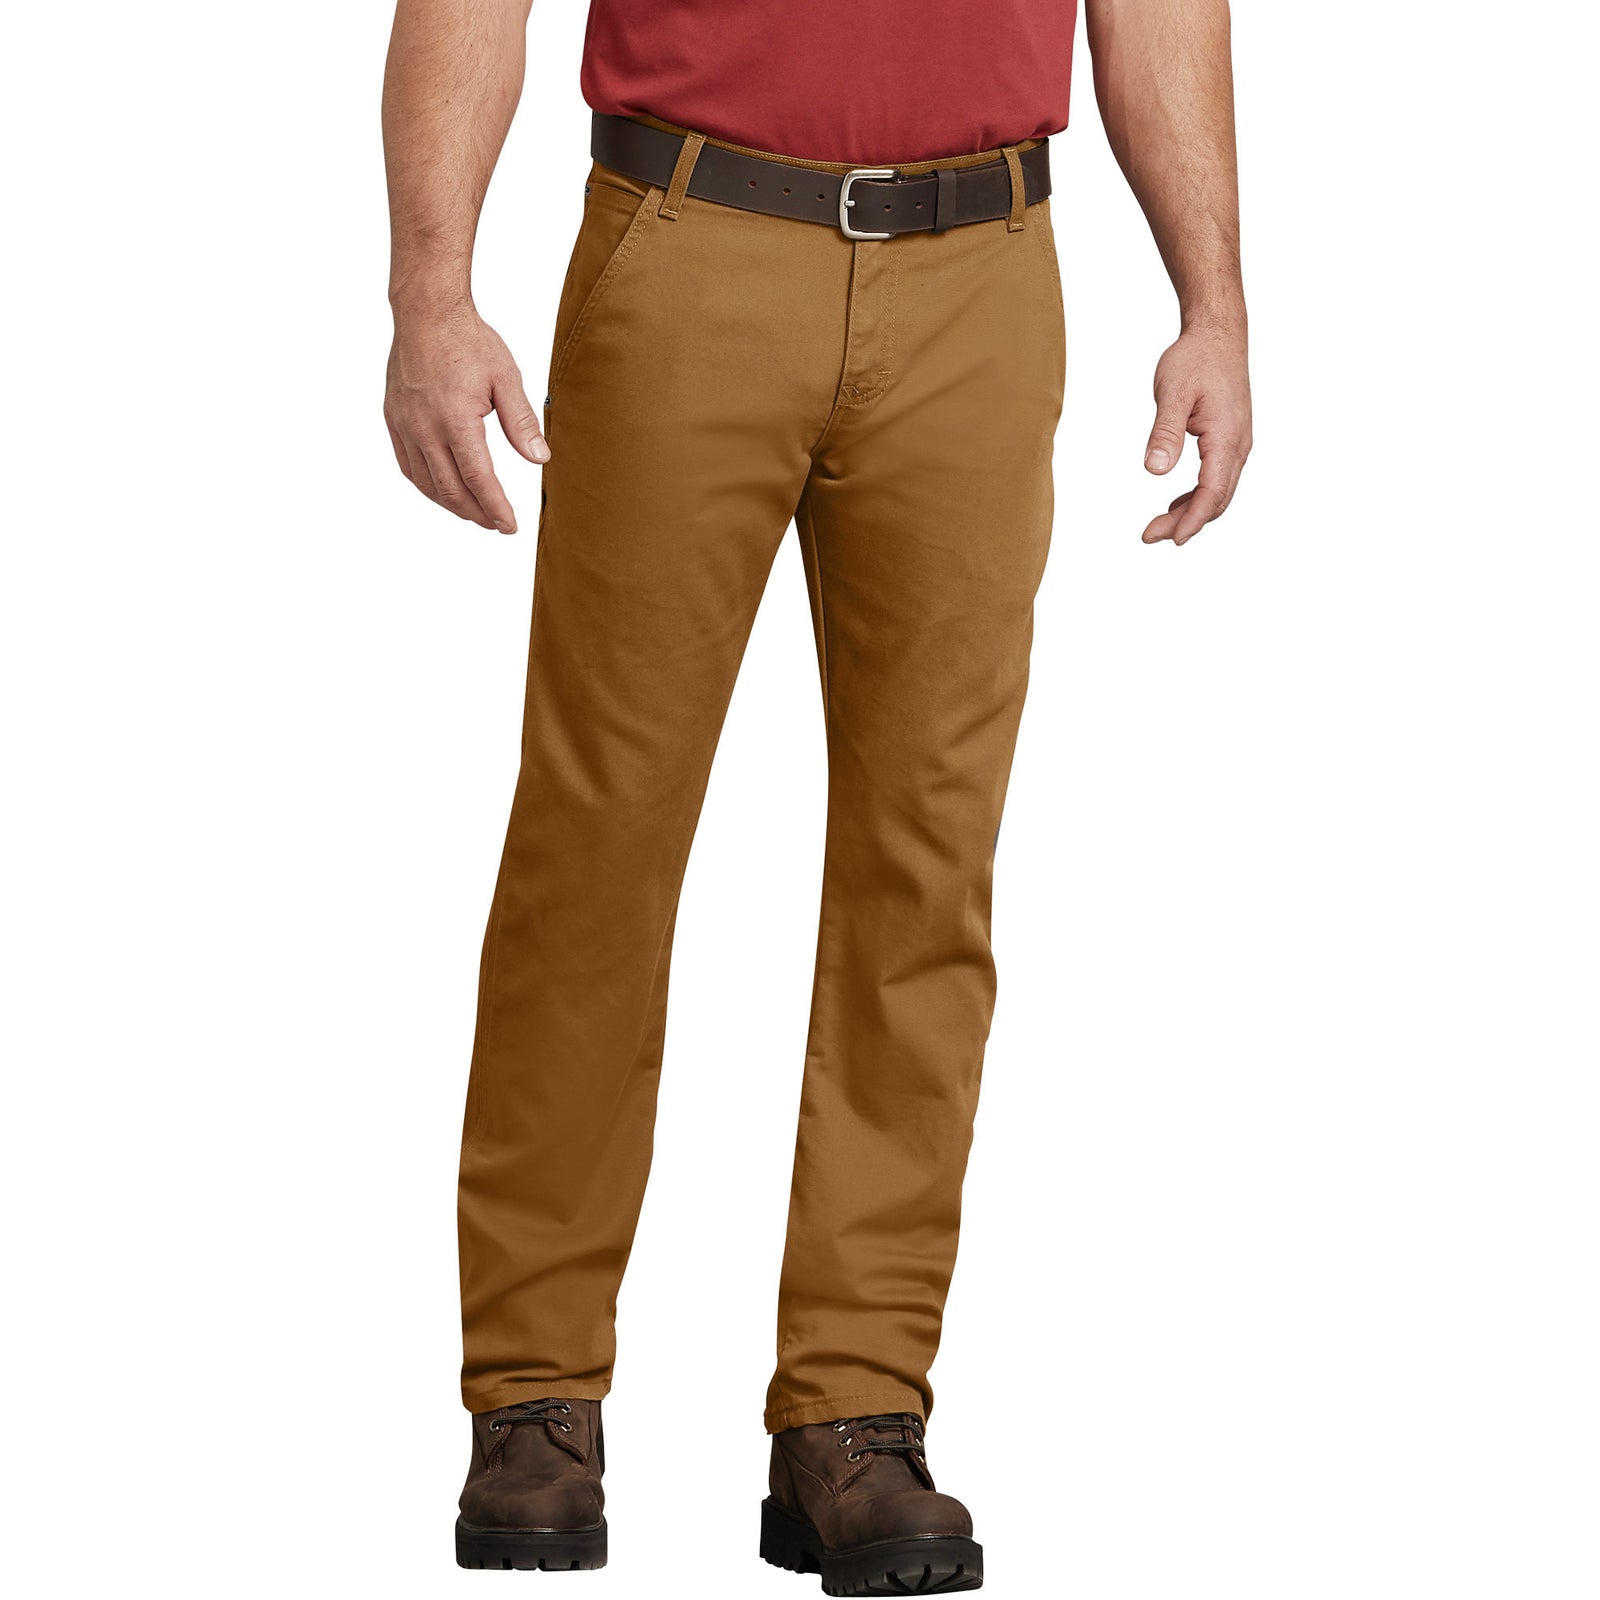 Brown Dickies 874 Work Pants, Shorts med utmerket superdry kvalitet